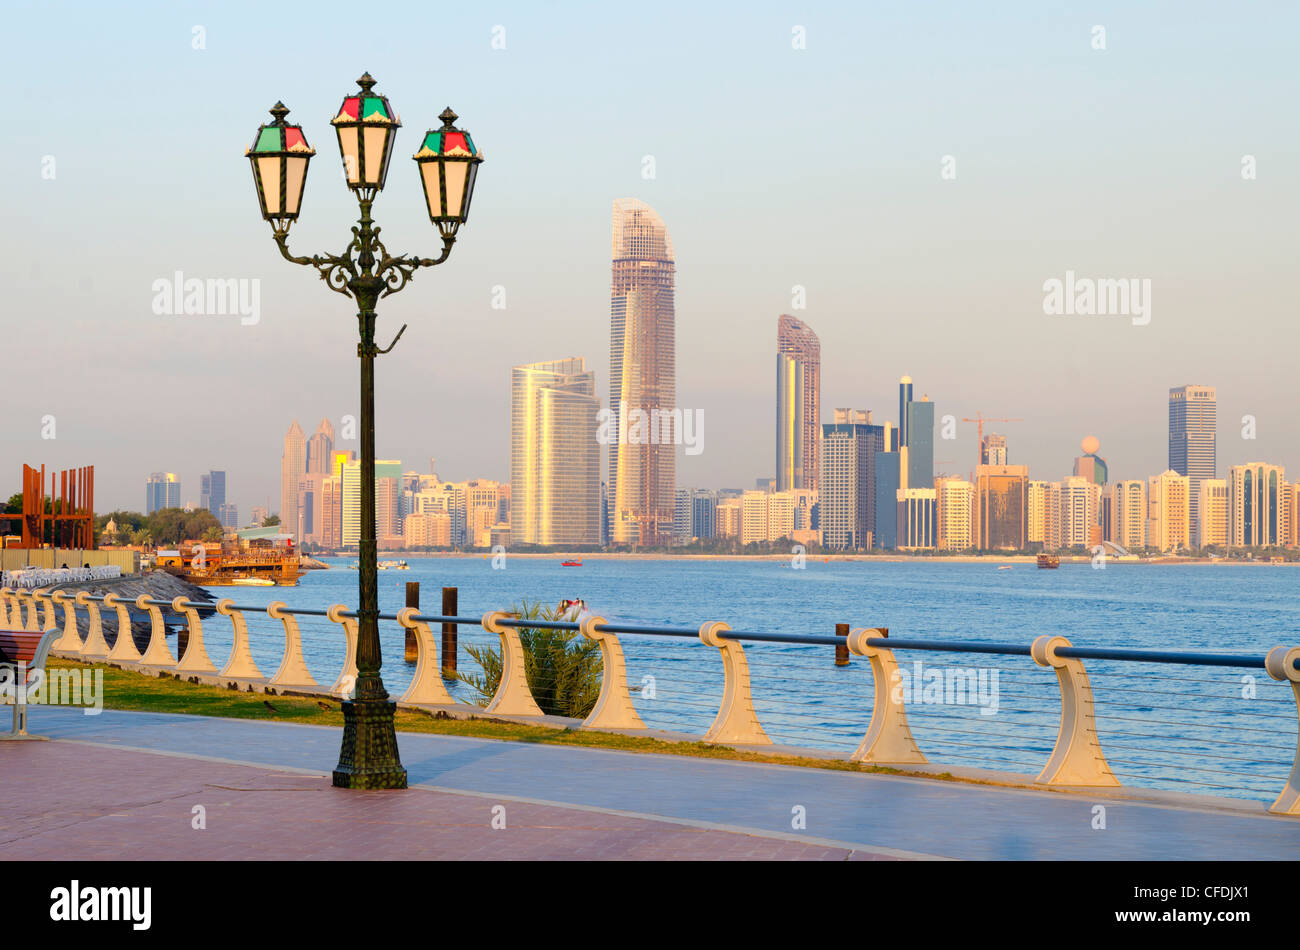 City skyline, Abu Dhabi, United Arab Emirates, Middle East Stock Photo